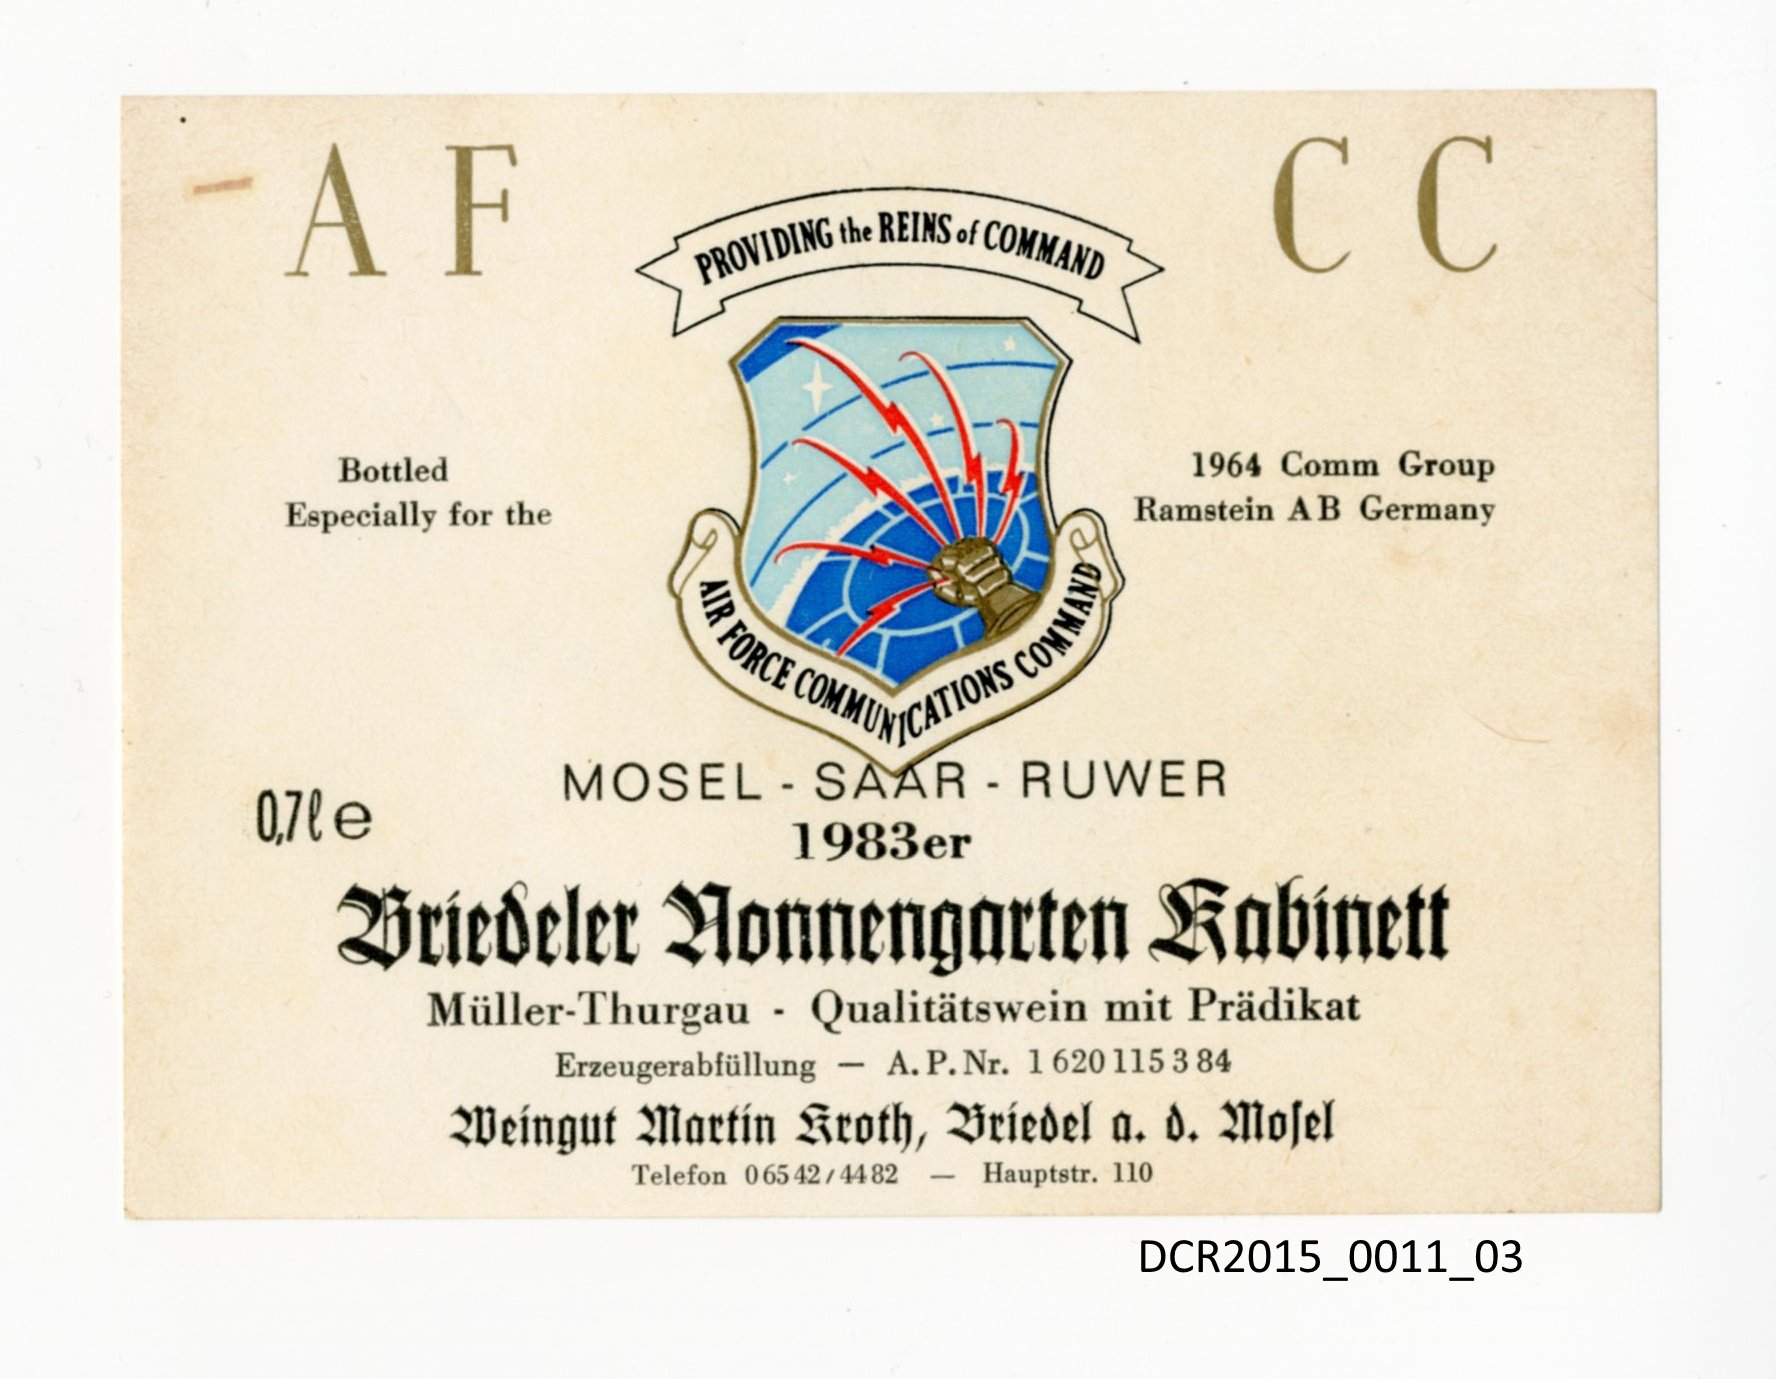 Personalisiertes Weinflaschenetikett für Air Force Communications Command ("dc-r" docu center ramstein RR-F)